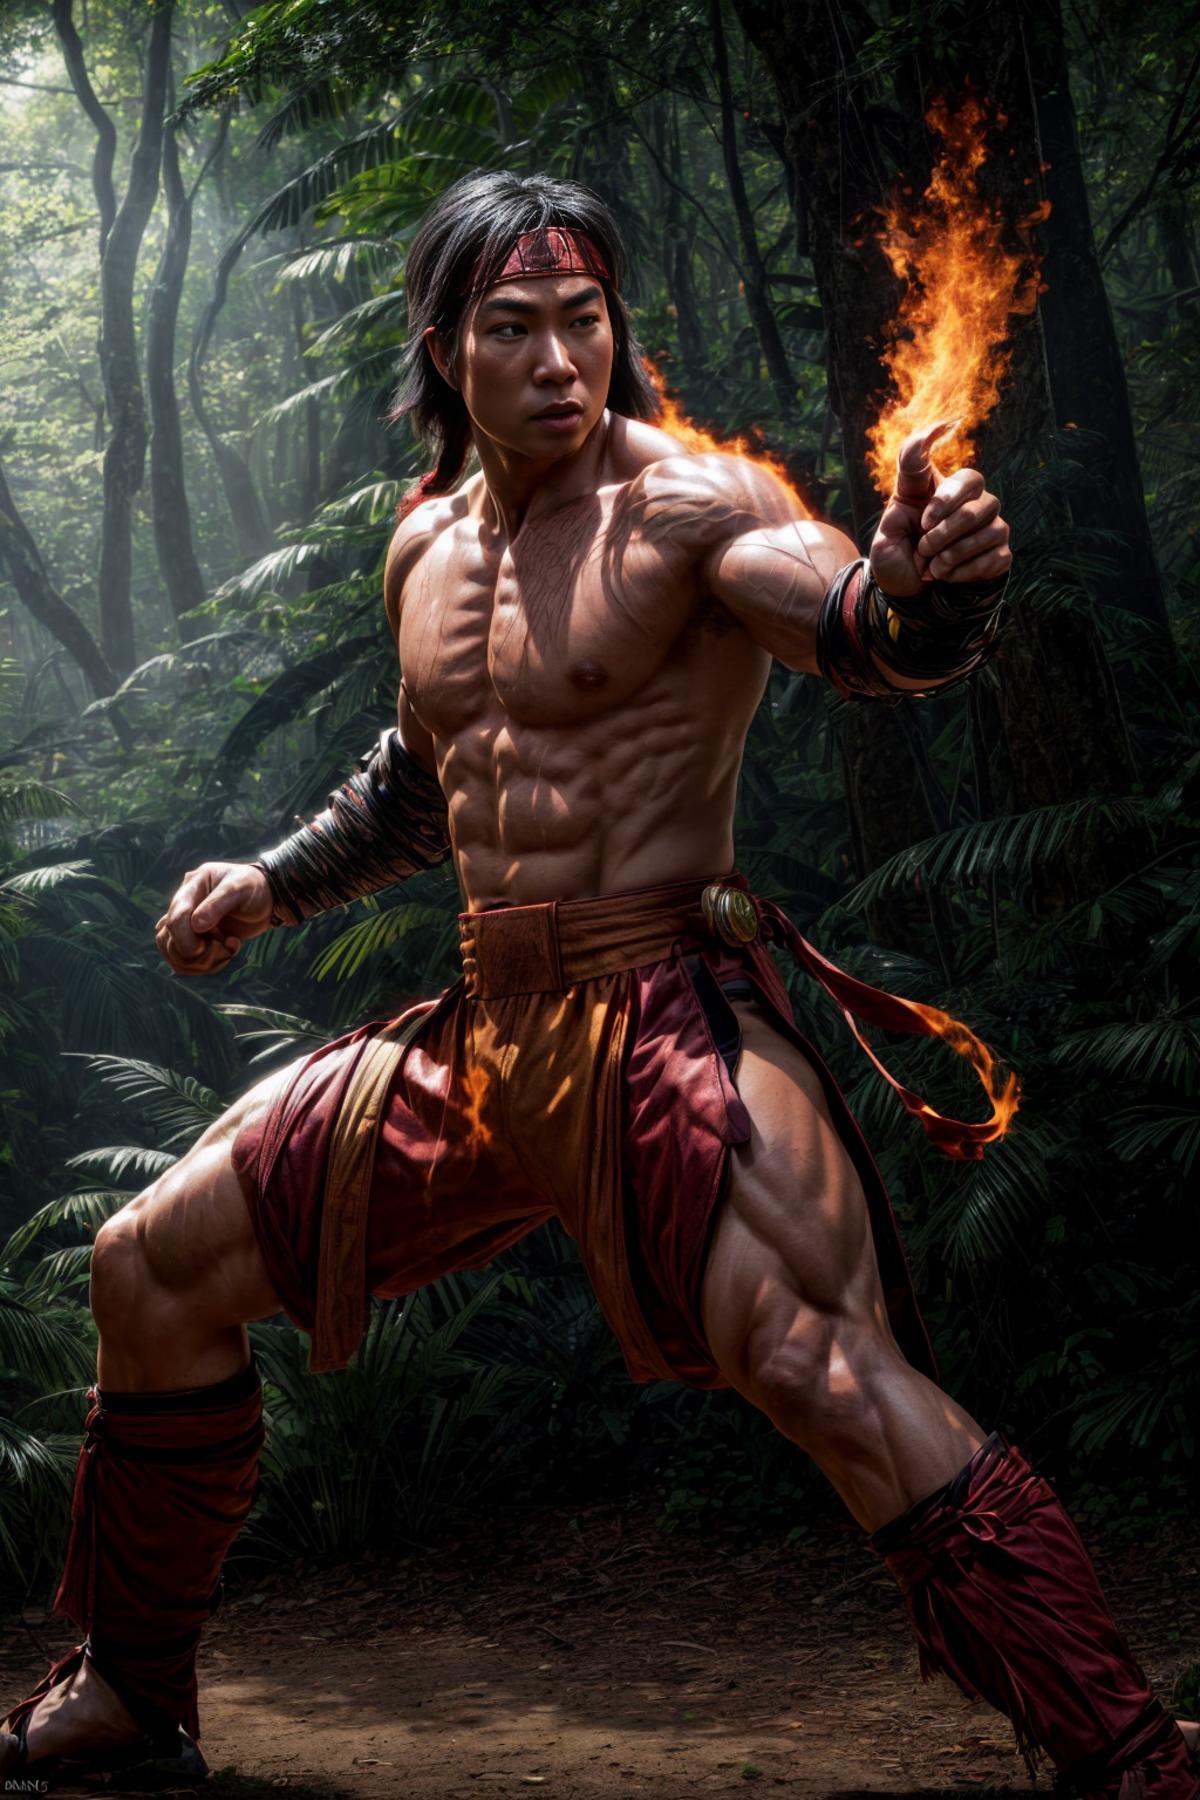 Liu Kang (Mortal Kombat) image by DeViLDoNia